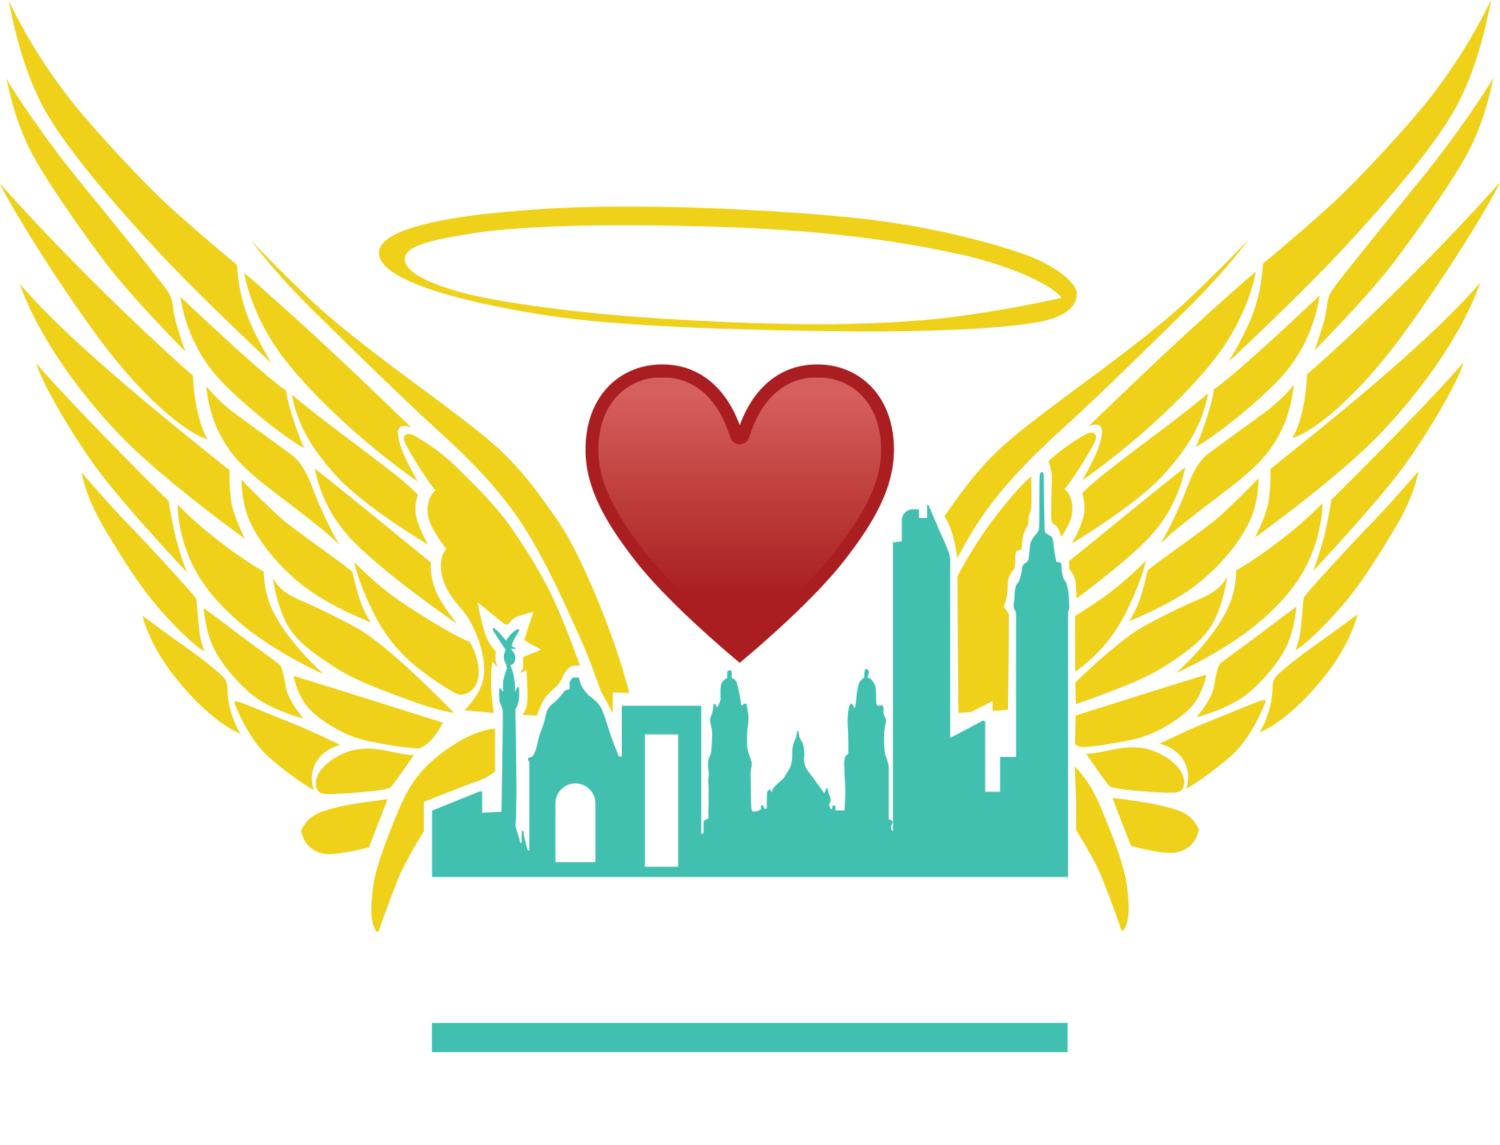 El Huarache De Mexico